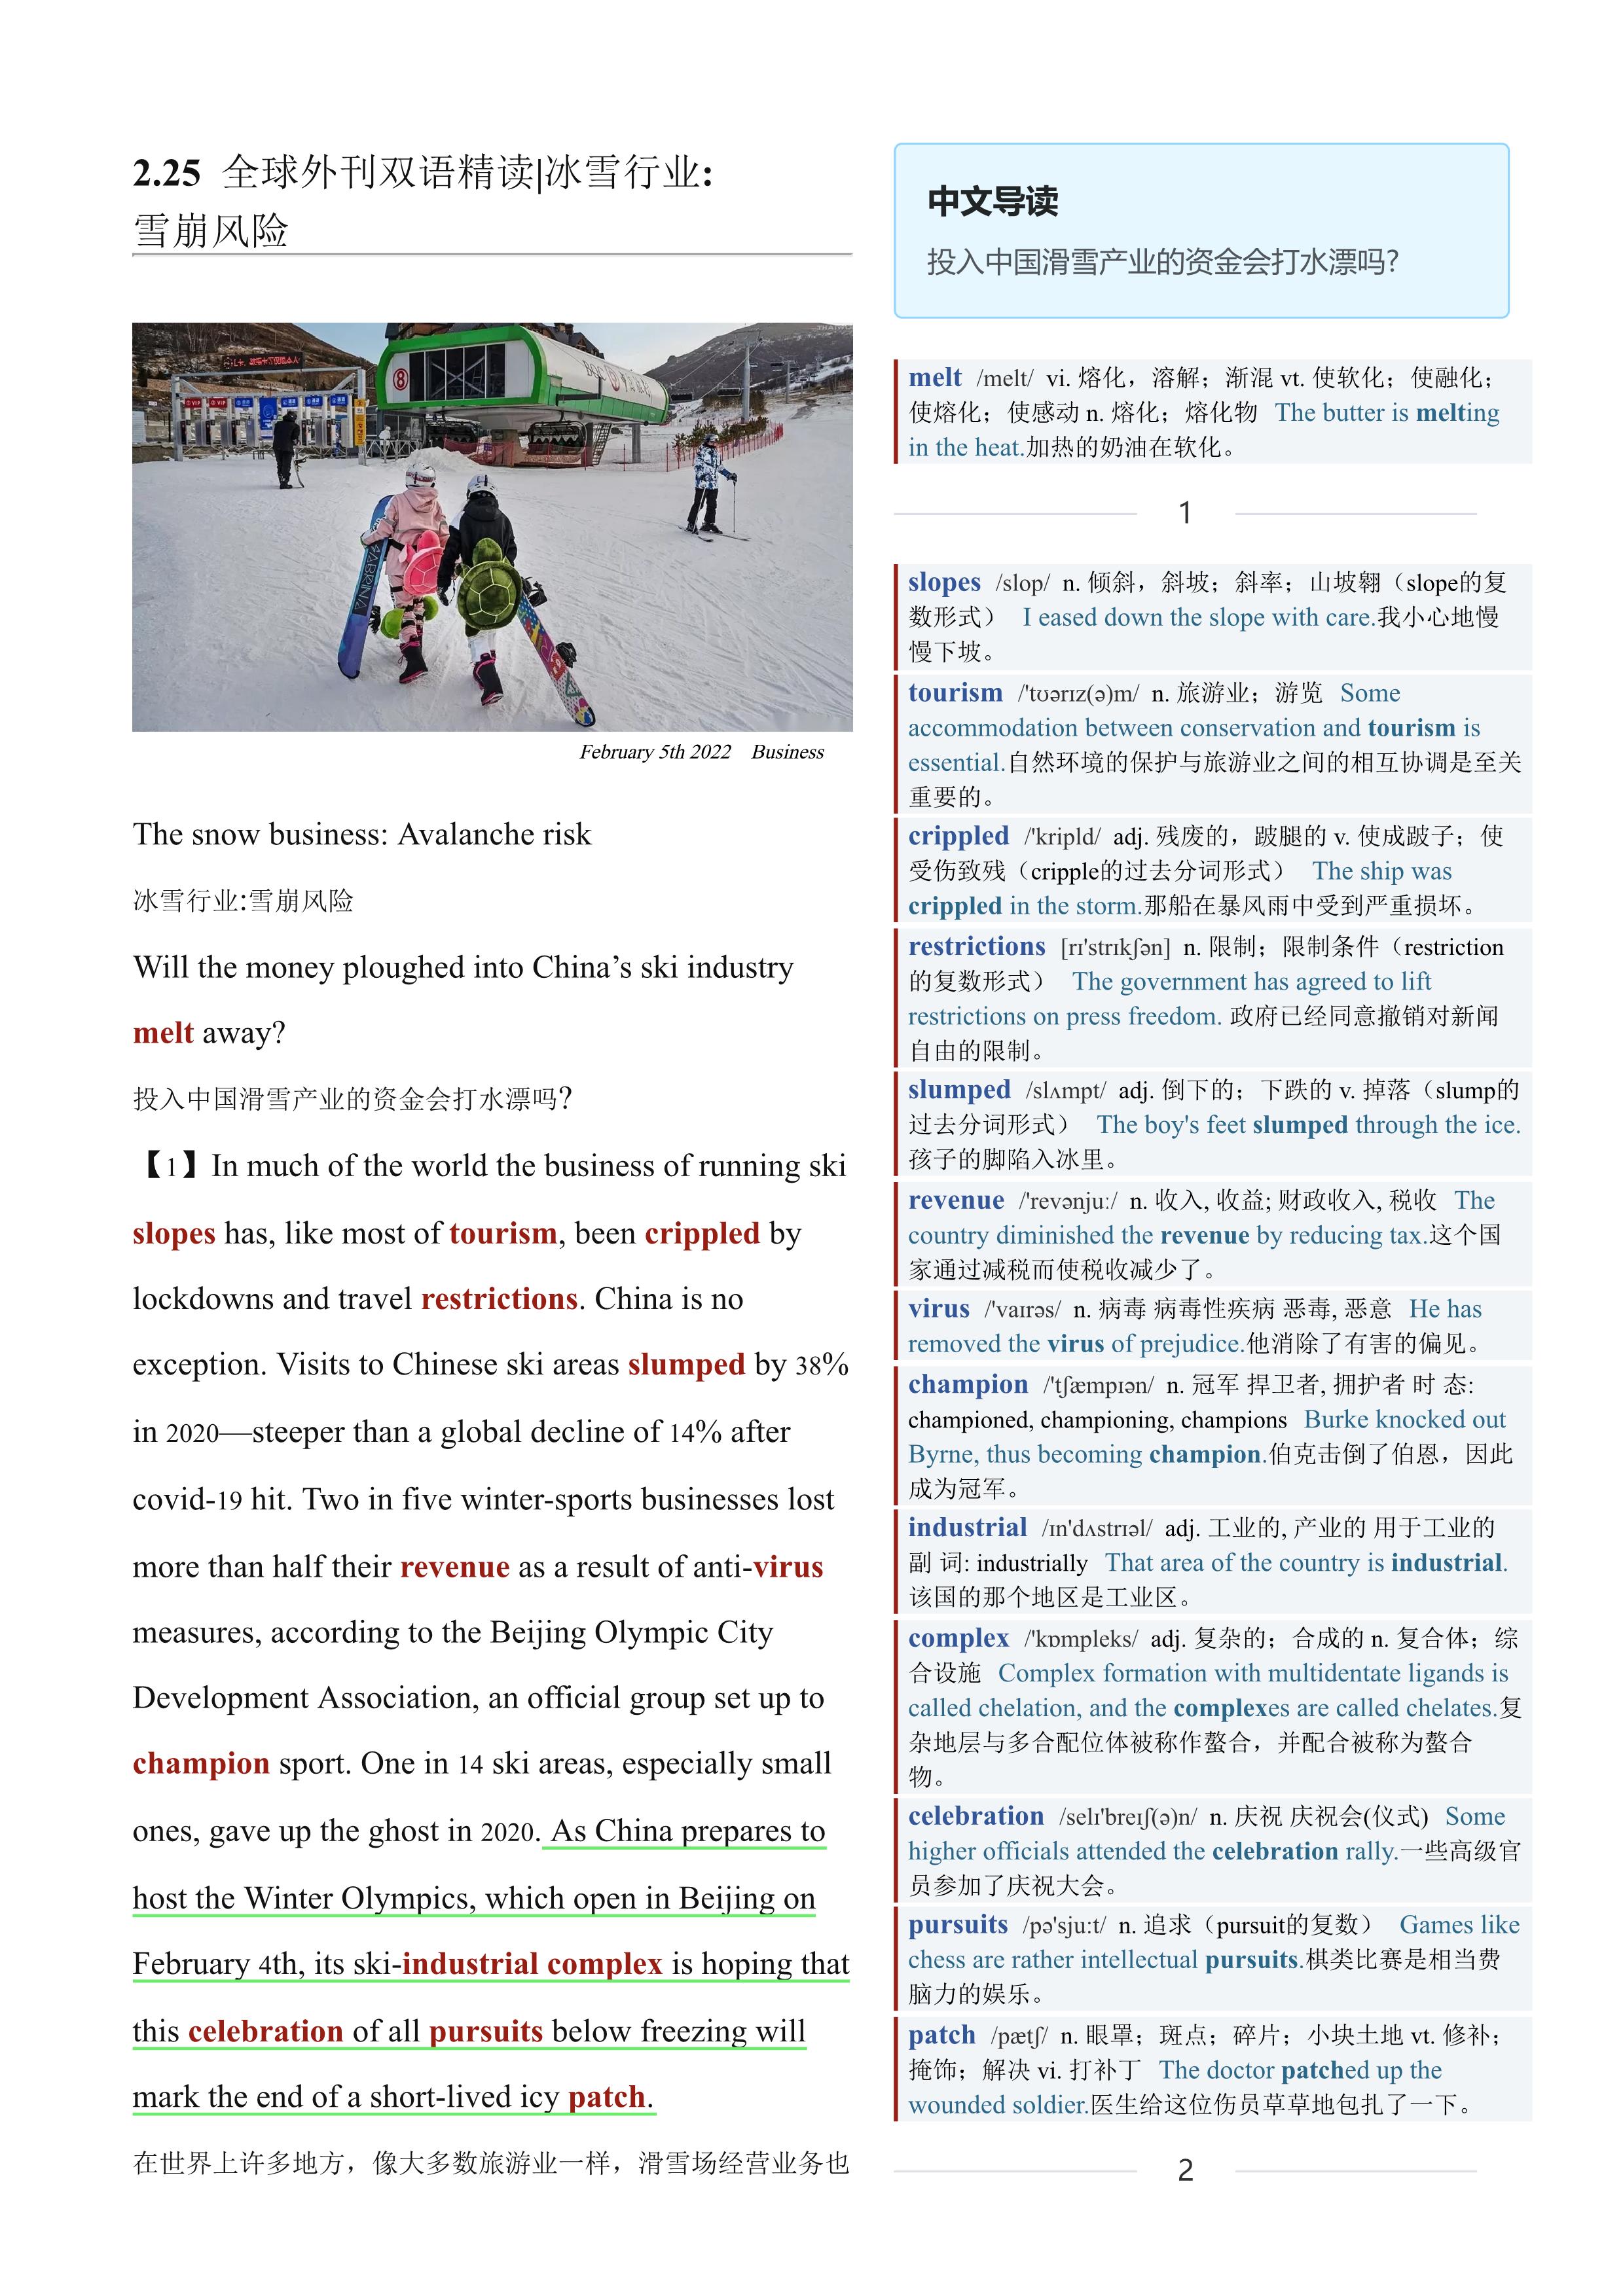 2022.02.25 经济学人双语精读丨冰雪行业:雪崩风险 (.PDF/DOC/MP3)